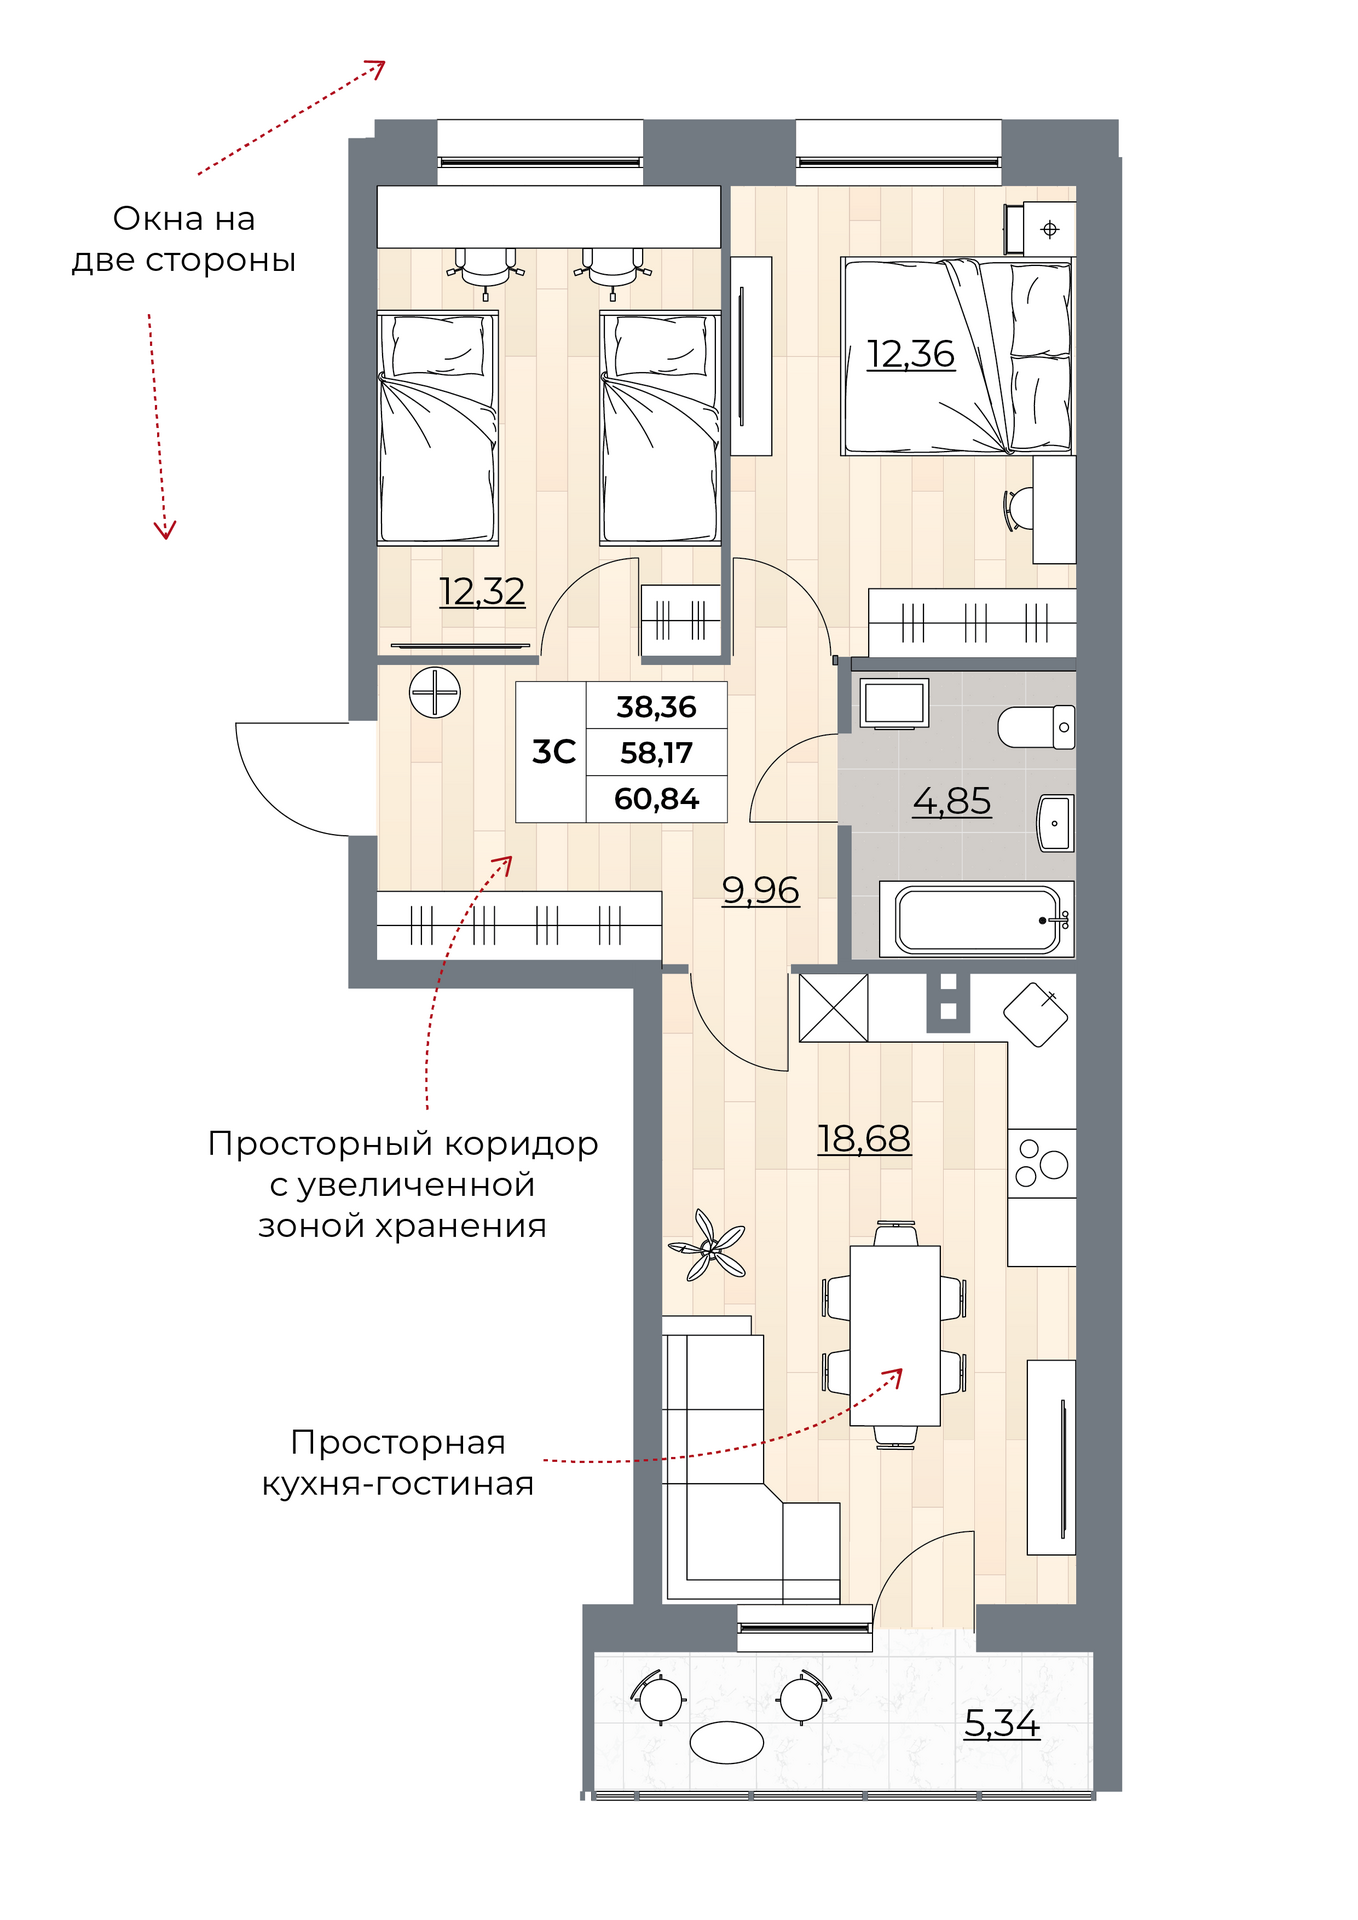 3-комнатная квартира 60.84м2 ЖК Рубин